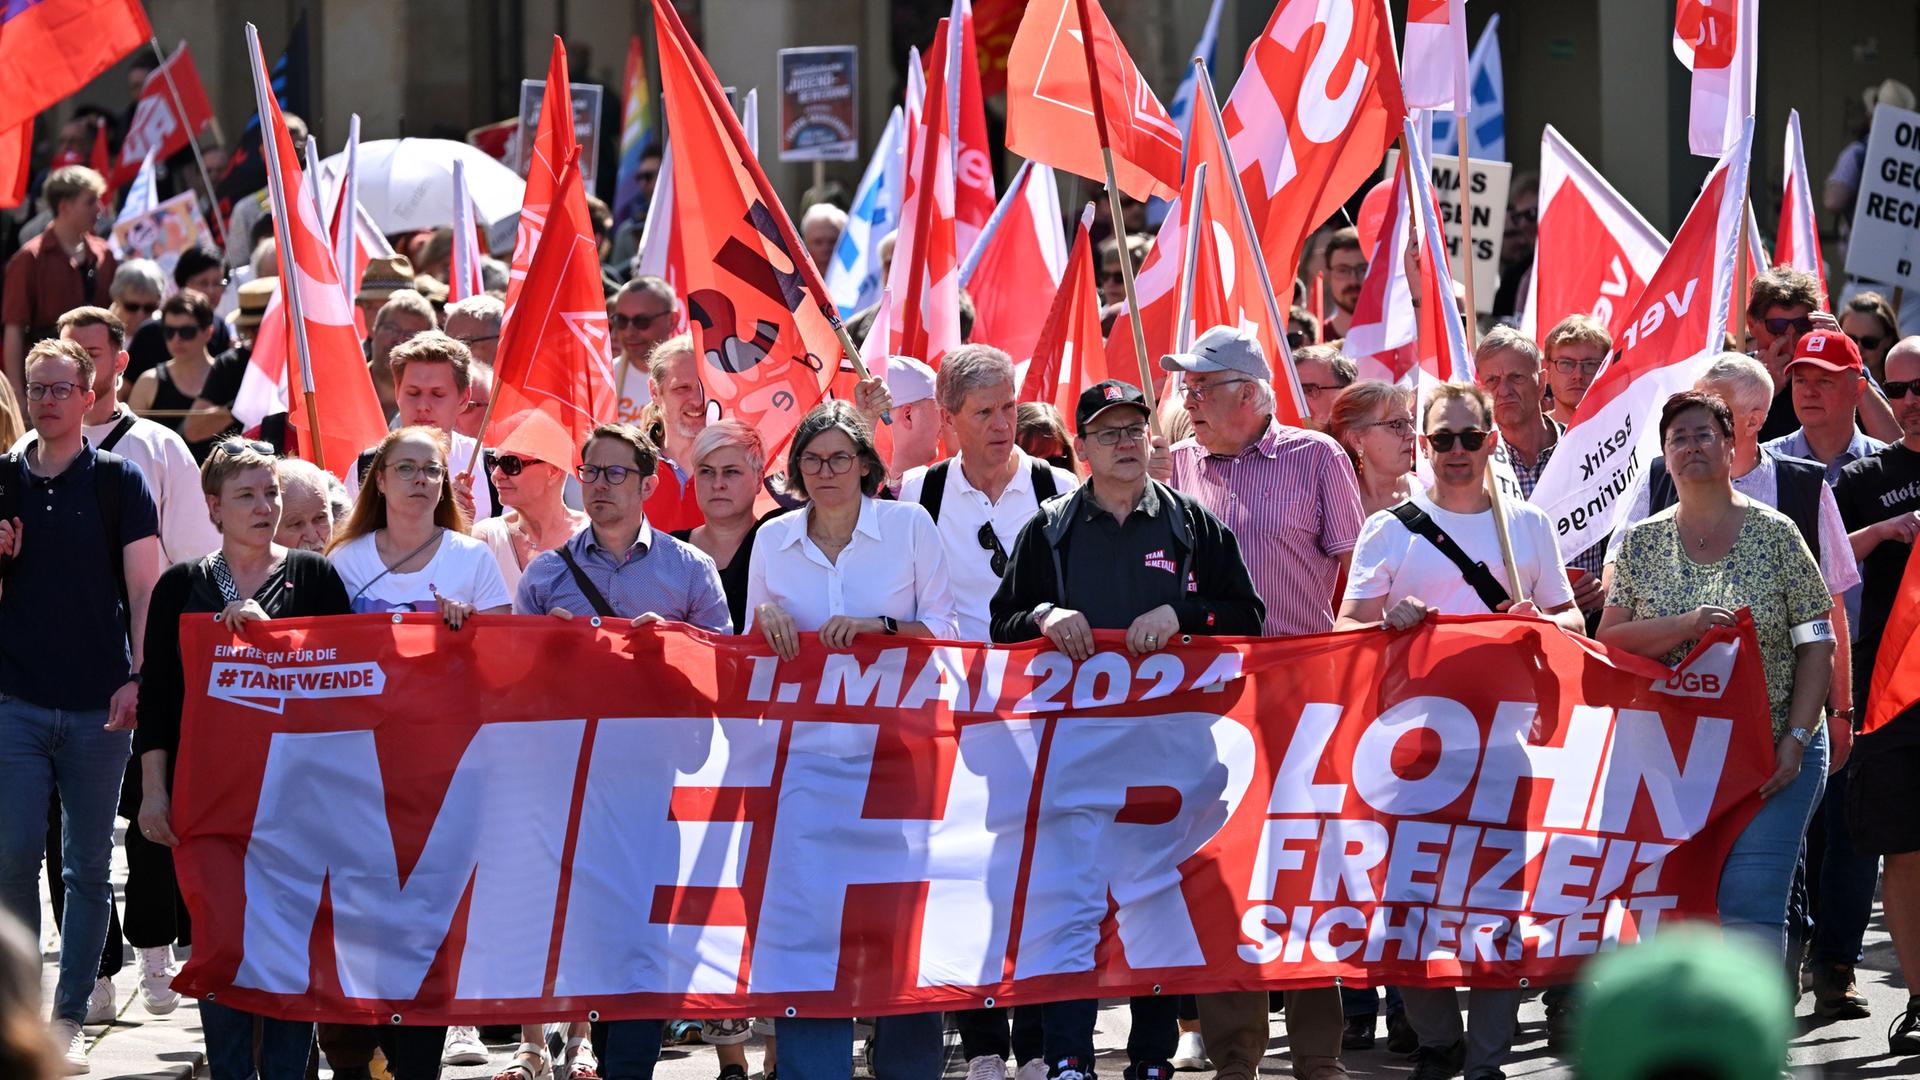 Menschen laufen in Erfurt gemeinsam durch die Straße. Sie halten rote Fahnen und ein rotes Schild. Darauf steht "Mehr Lohn". 